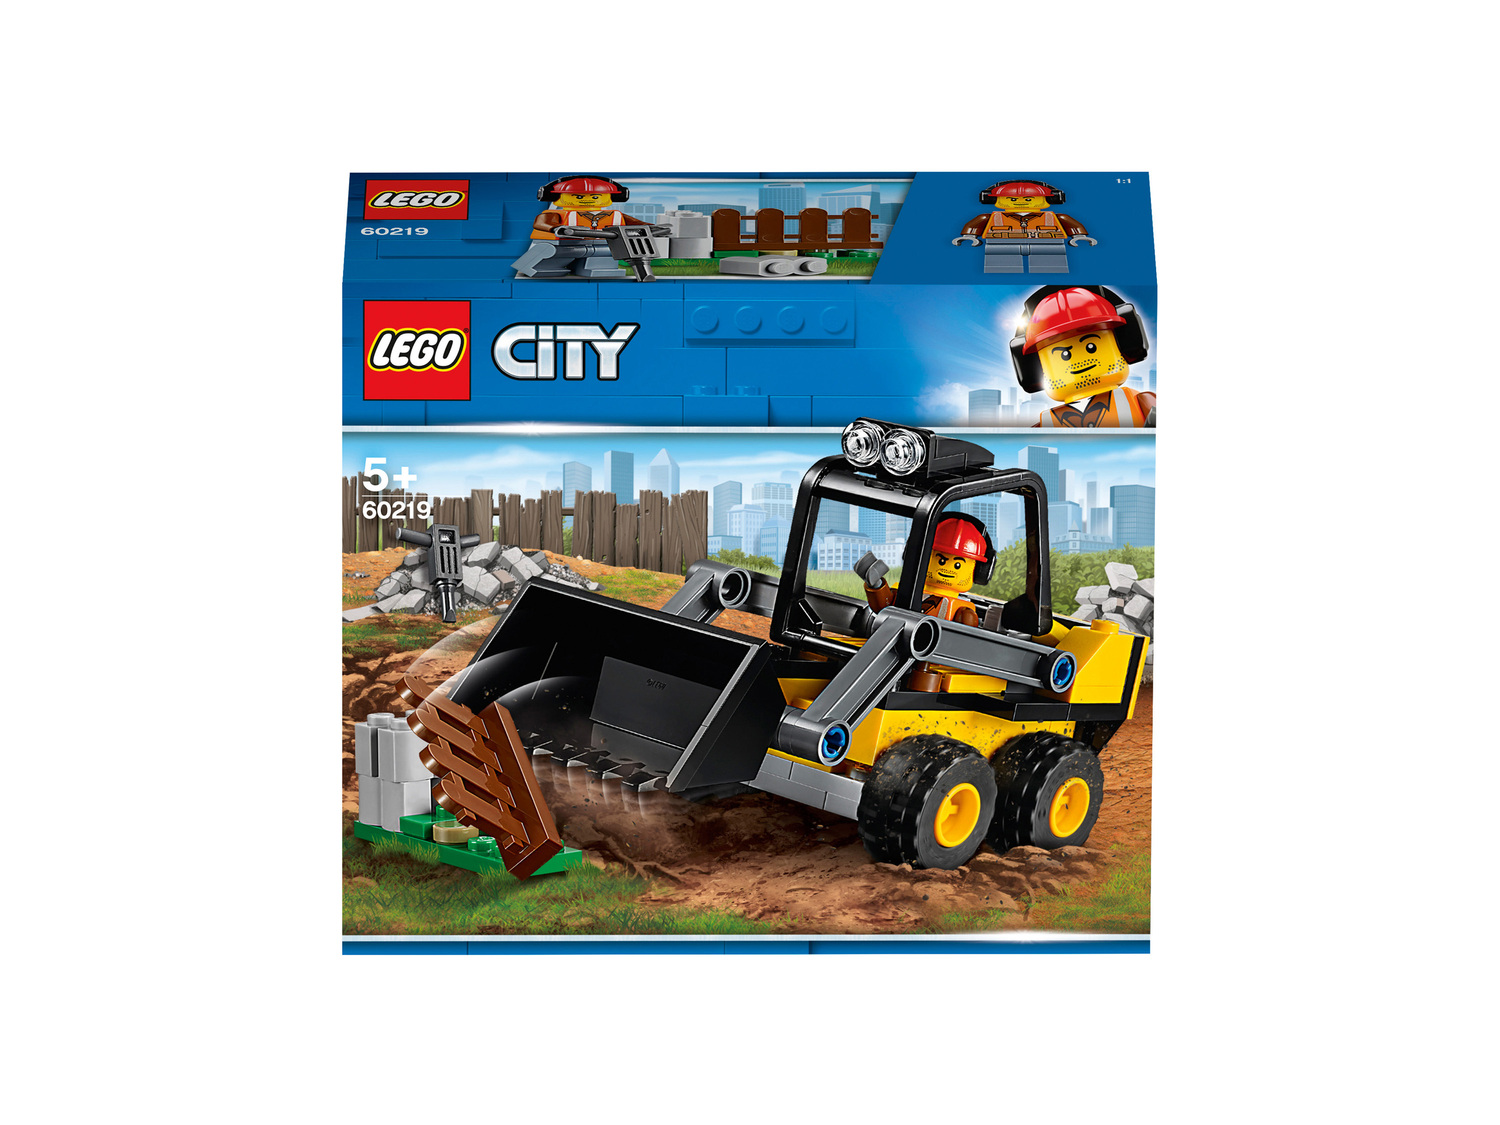 Costruzioni Lego, prezzo 8.99 €  

Series 7 Microfighters LEgo Star Wars